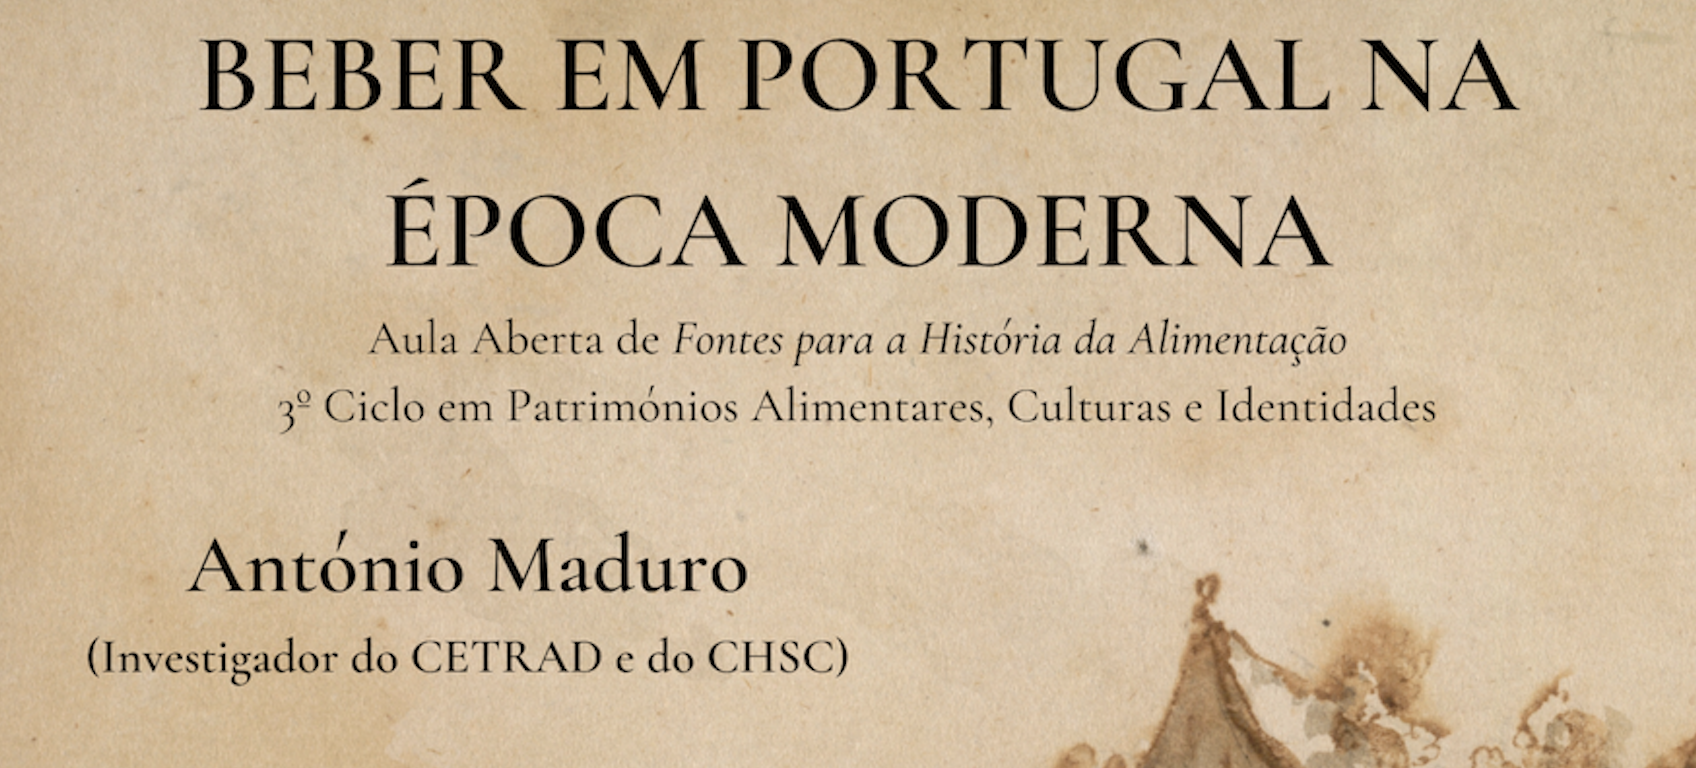 Conferência por António Maduro: Beber em Portugal na Época Moderna